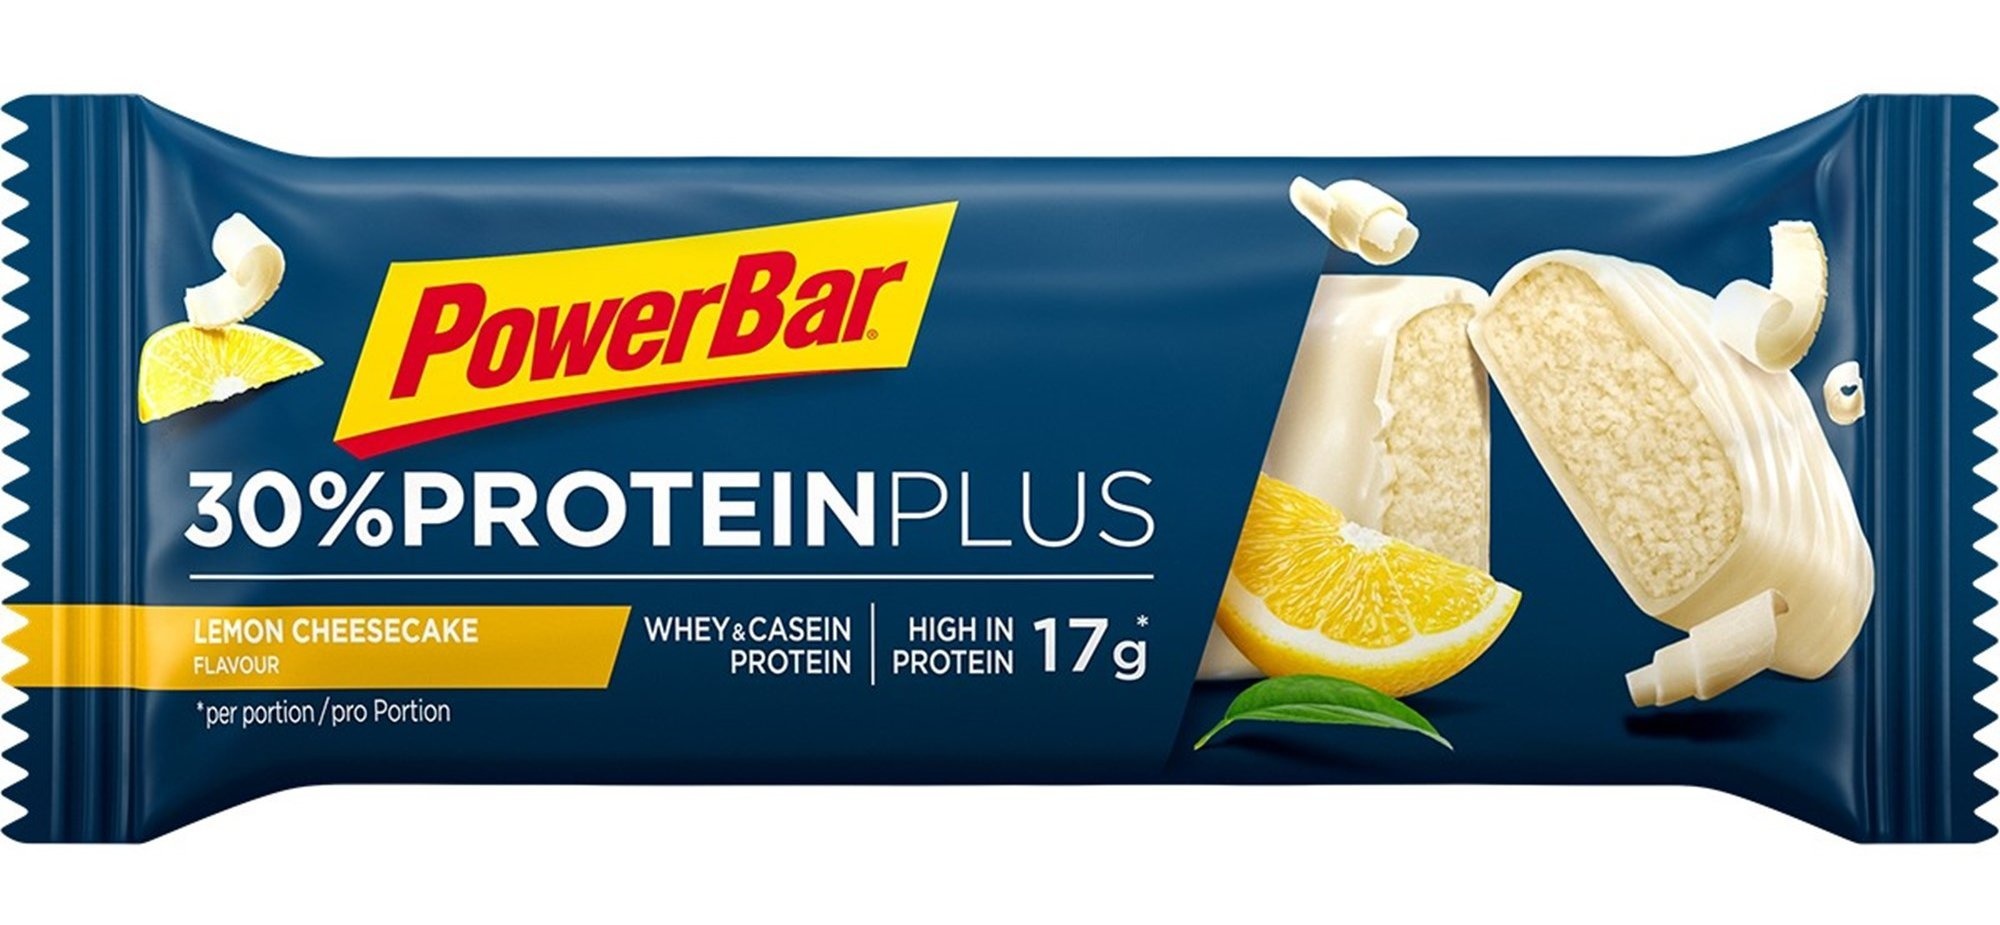 13: PowerBar 30% Protein Plus Lemon Cheesecake